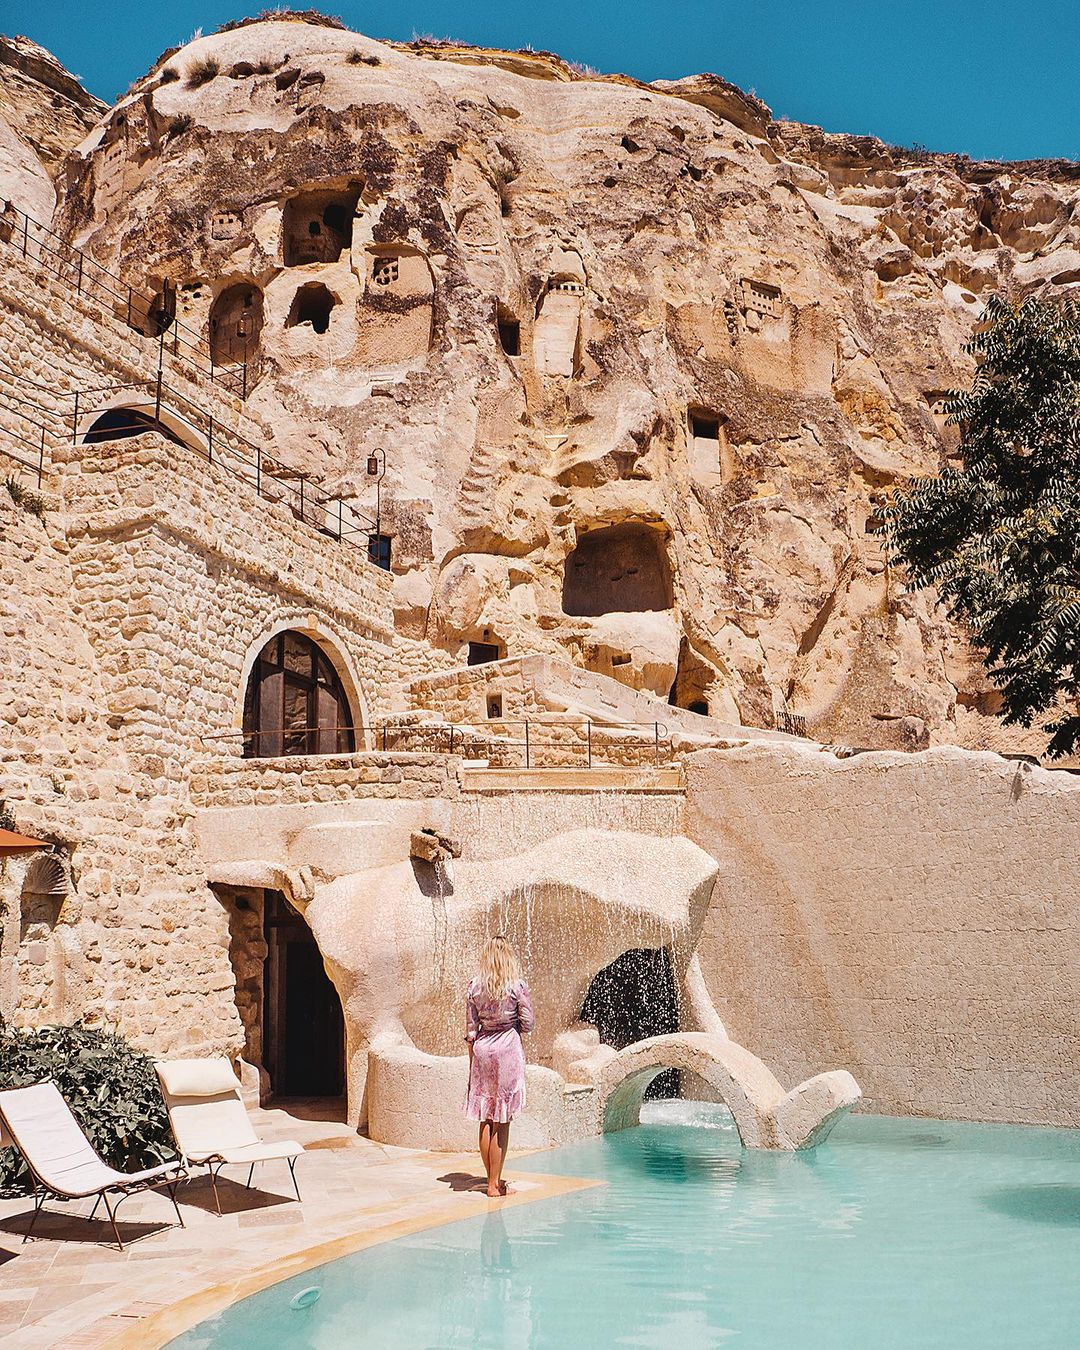 Khách sạn hang đá ở Thổ Nhĩ Kỳ 'sang chảnh' không kém resort nổi tiếng - 6